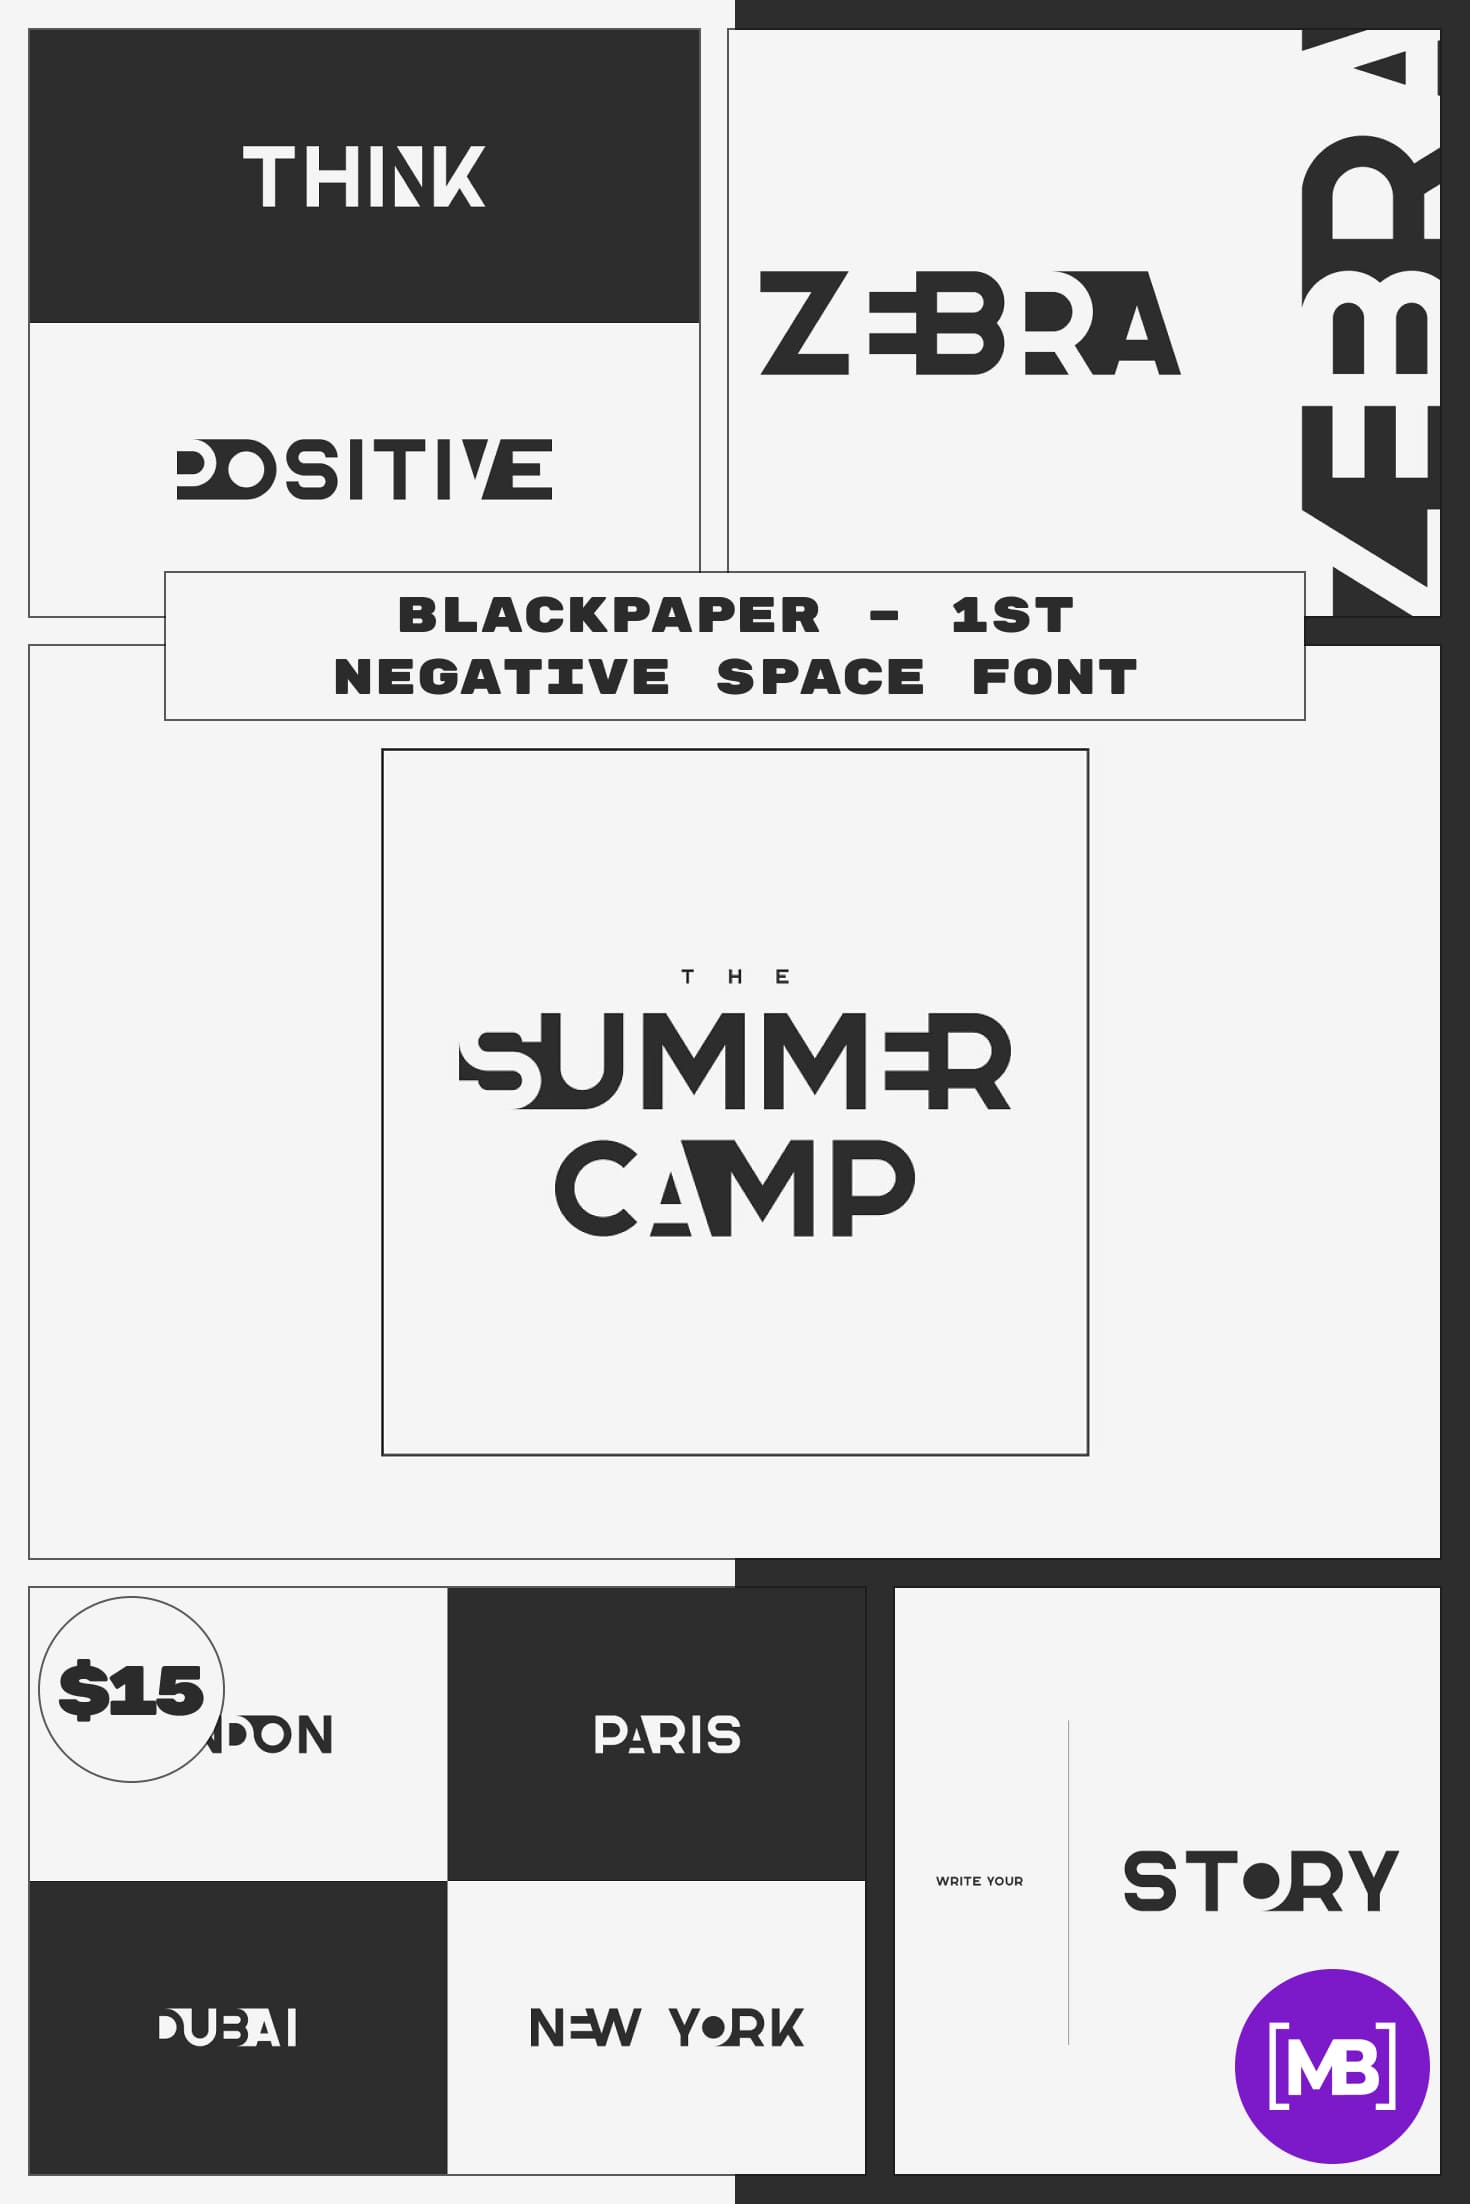 Blackpaper – 1st Negative Space Font. Gangster Fonts.